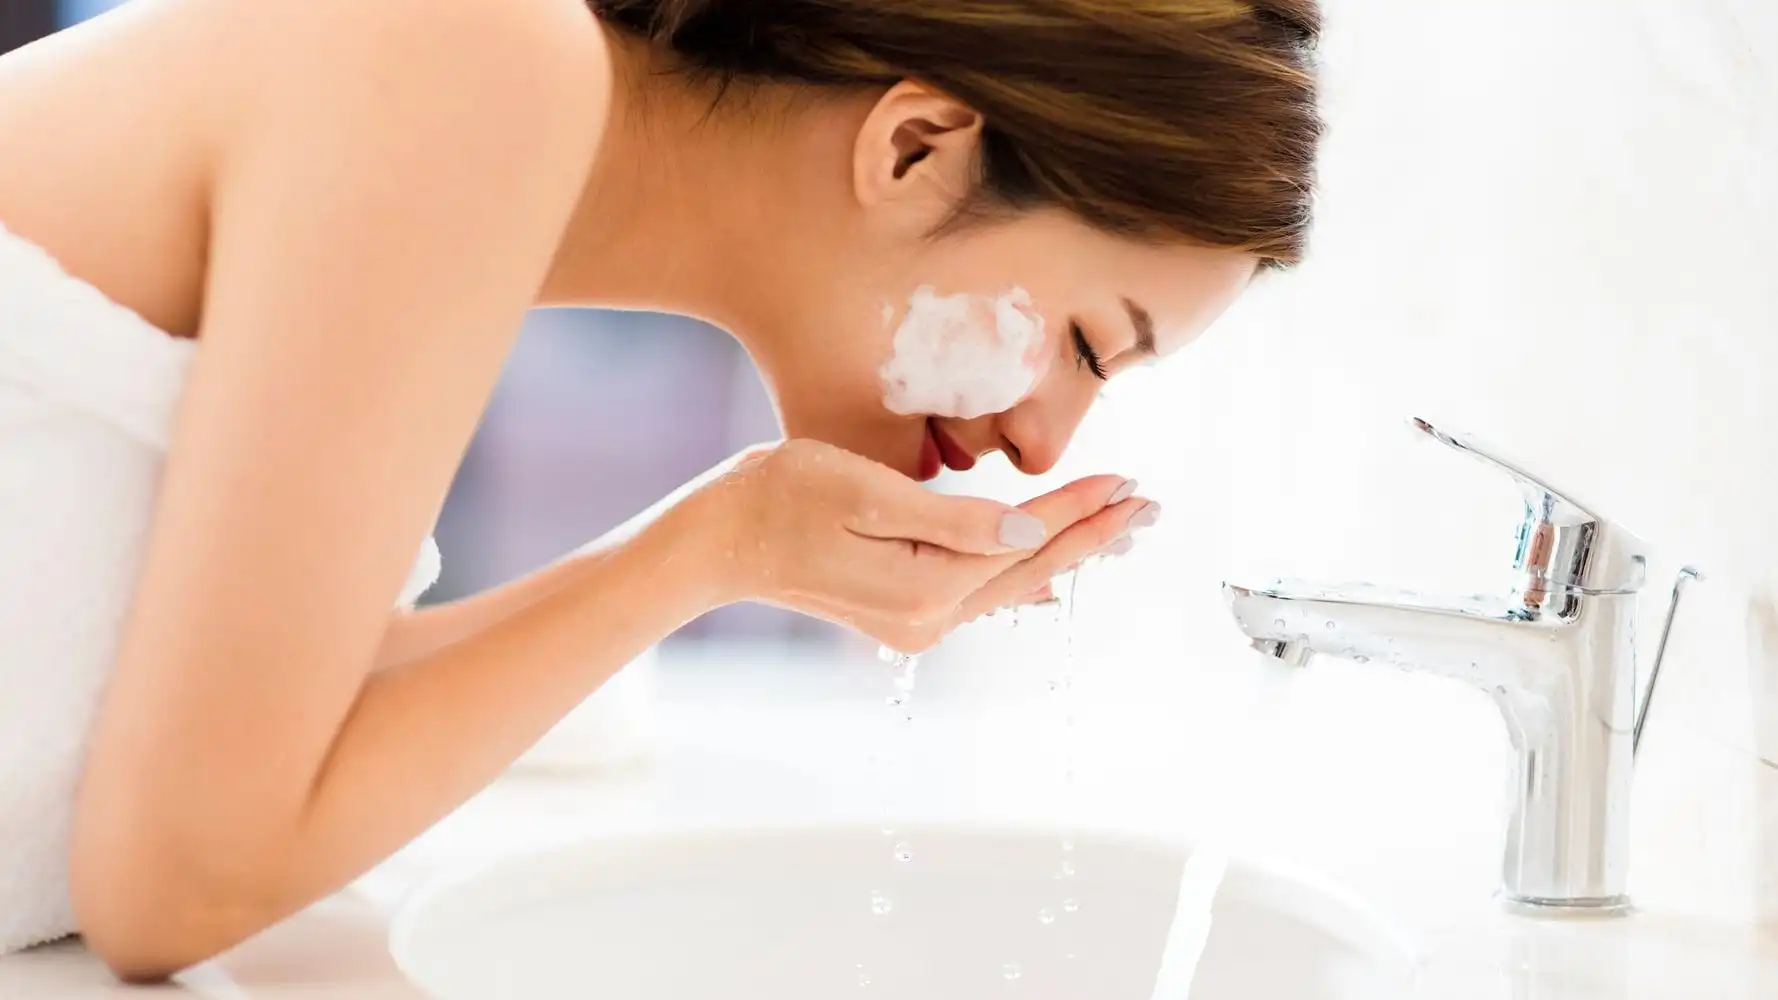 Jabón de azufre – Para qué sirve, beneficios + receta casera